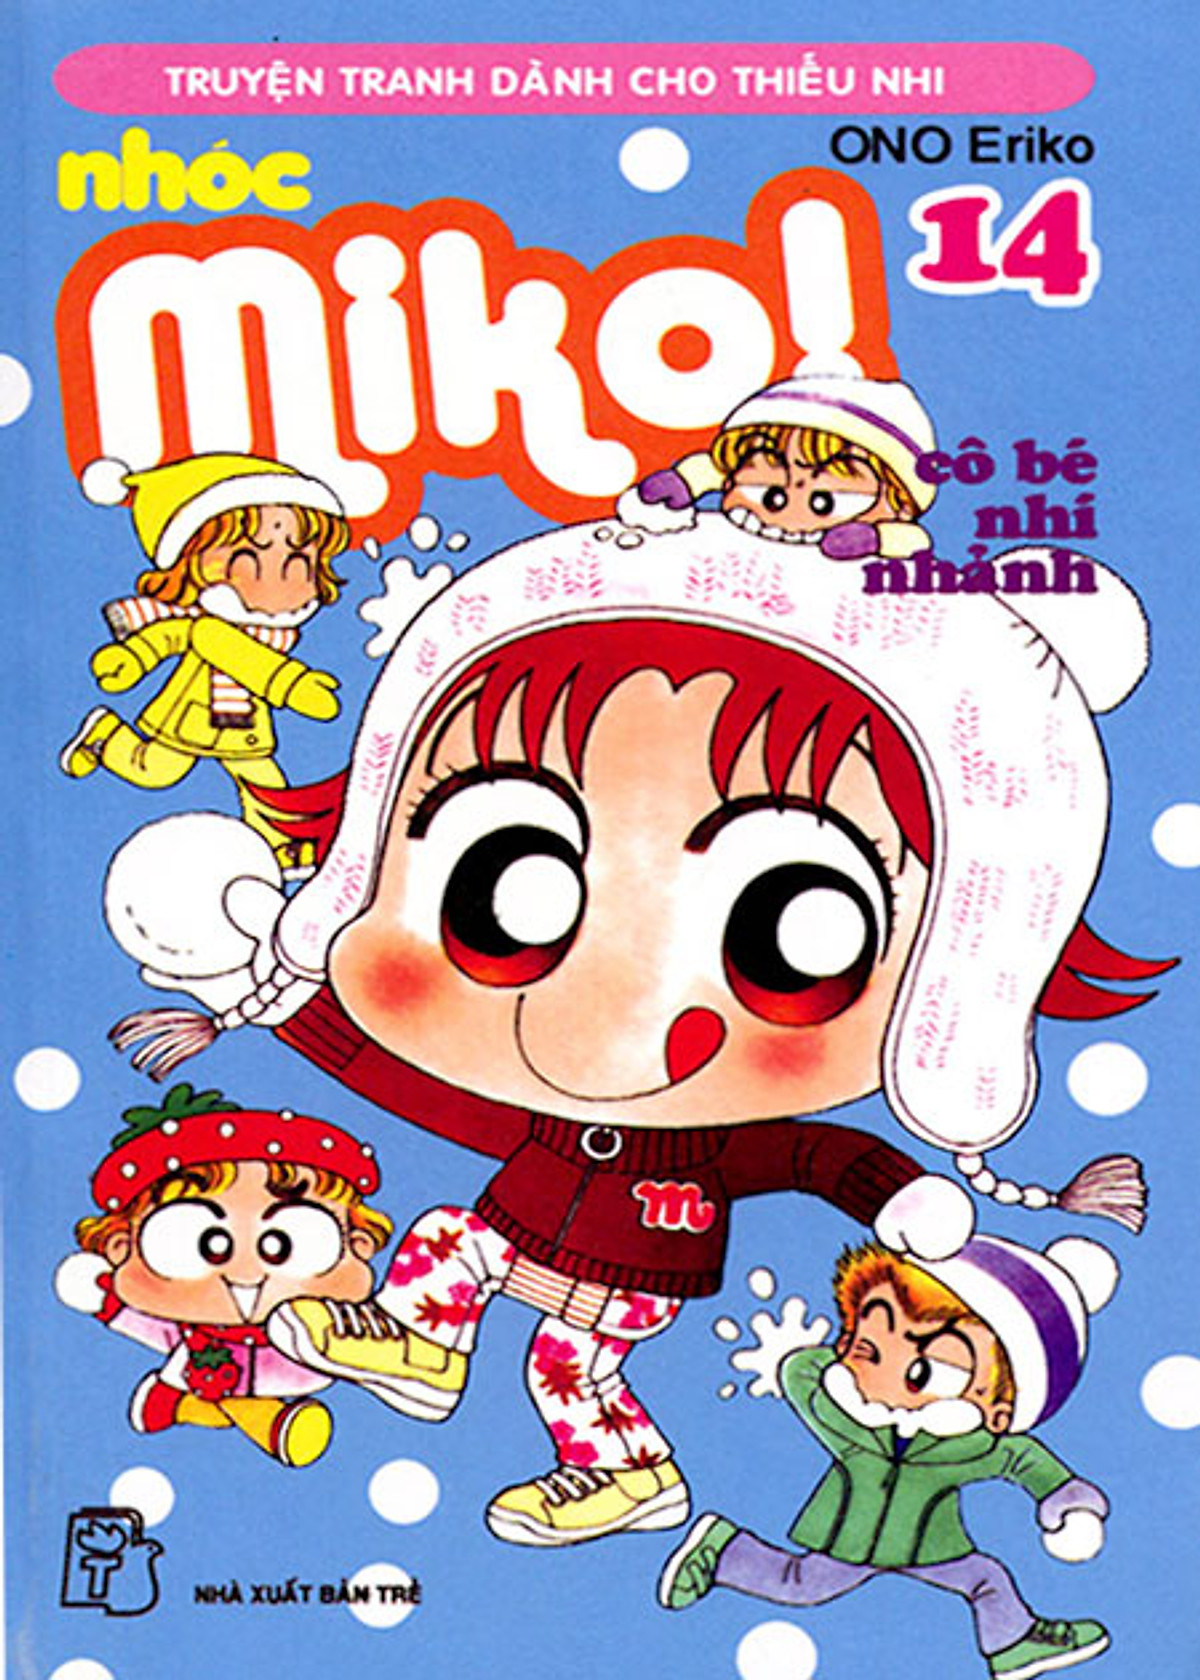 Nhóc Miko: Cô Bé Nhí Nhảnh - Tập 14